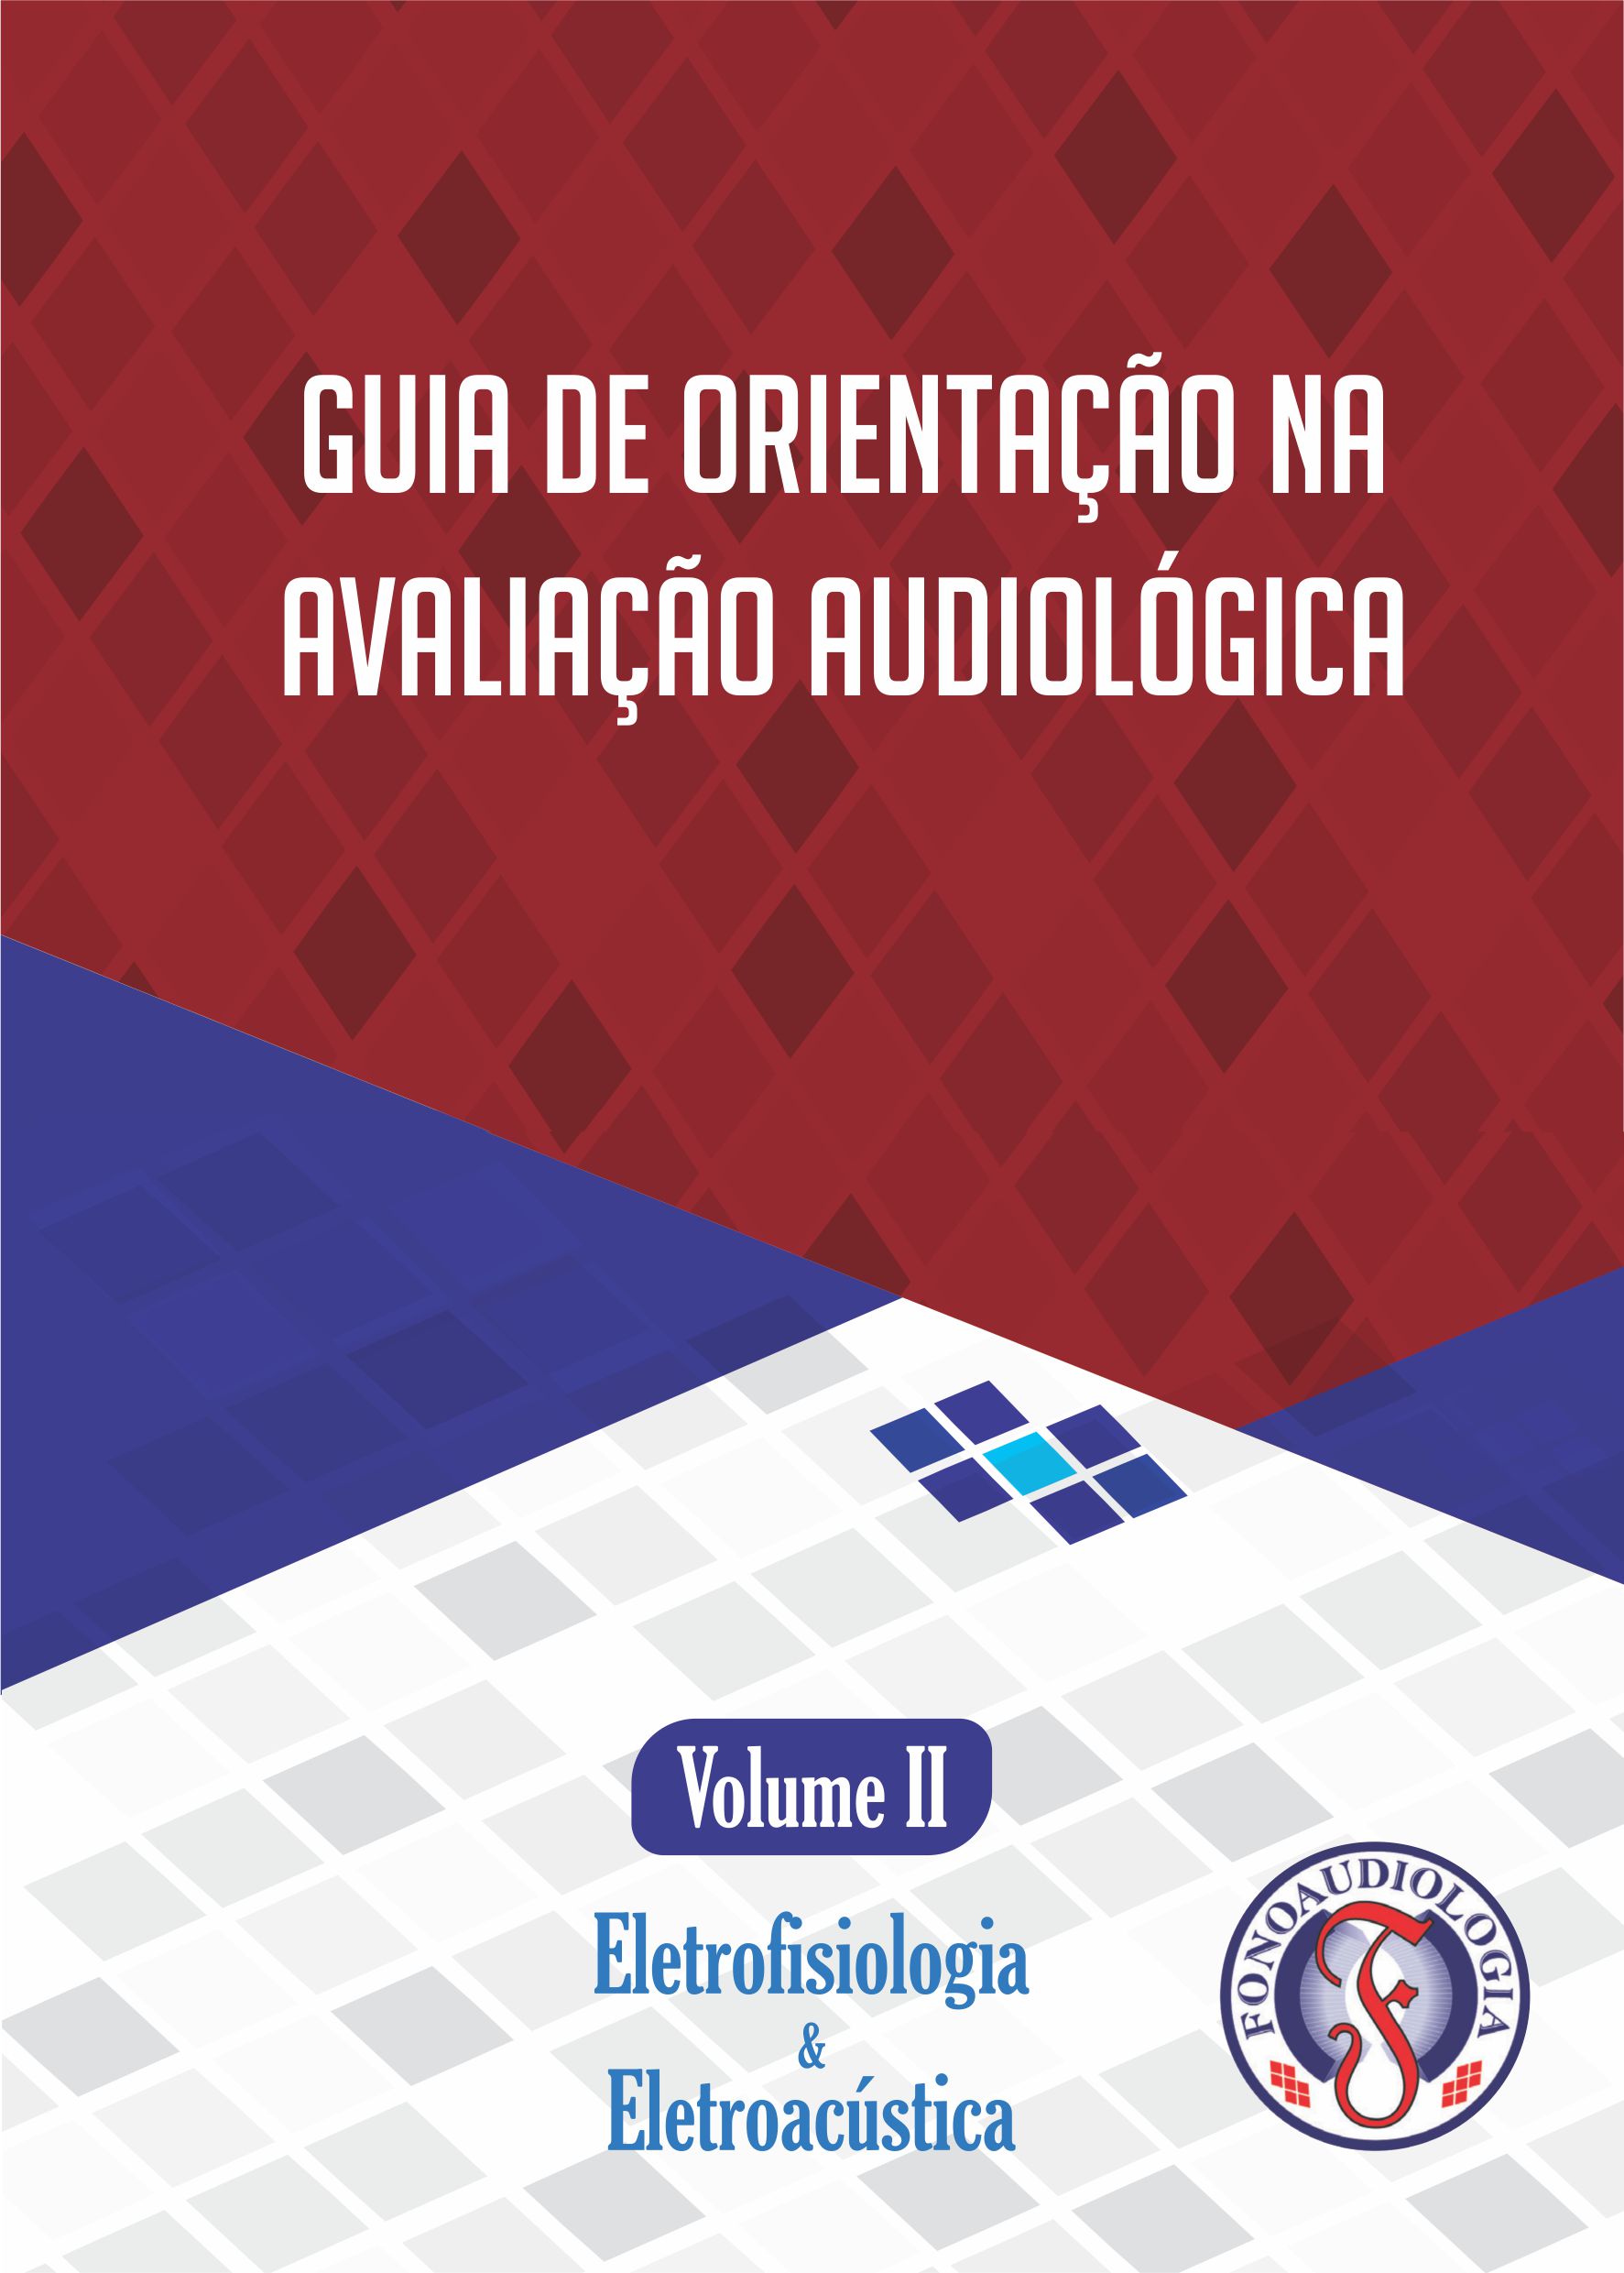 Livreto: Guia de Orientações na Avaliação Audiológica